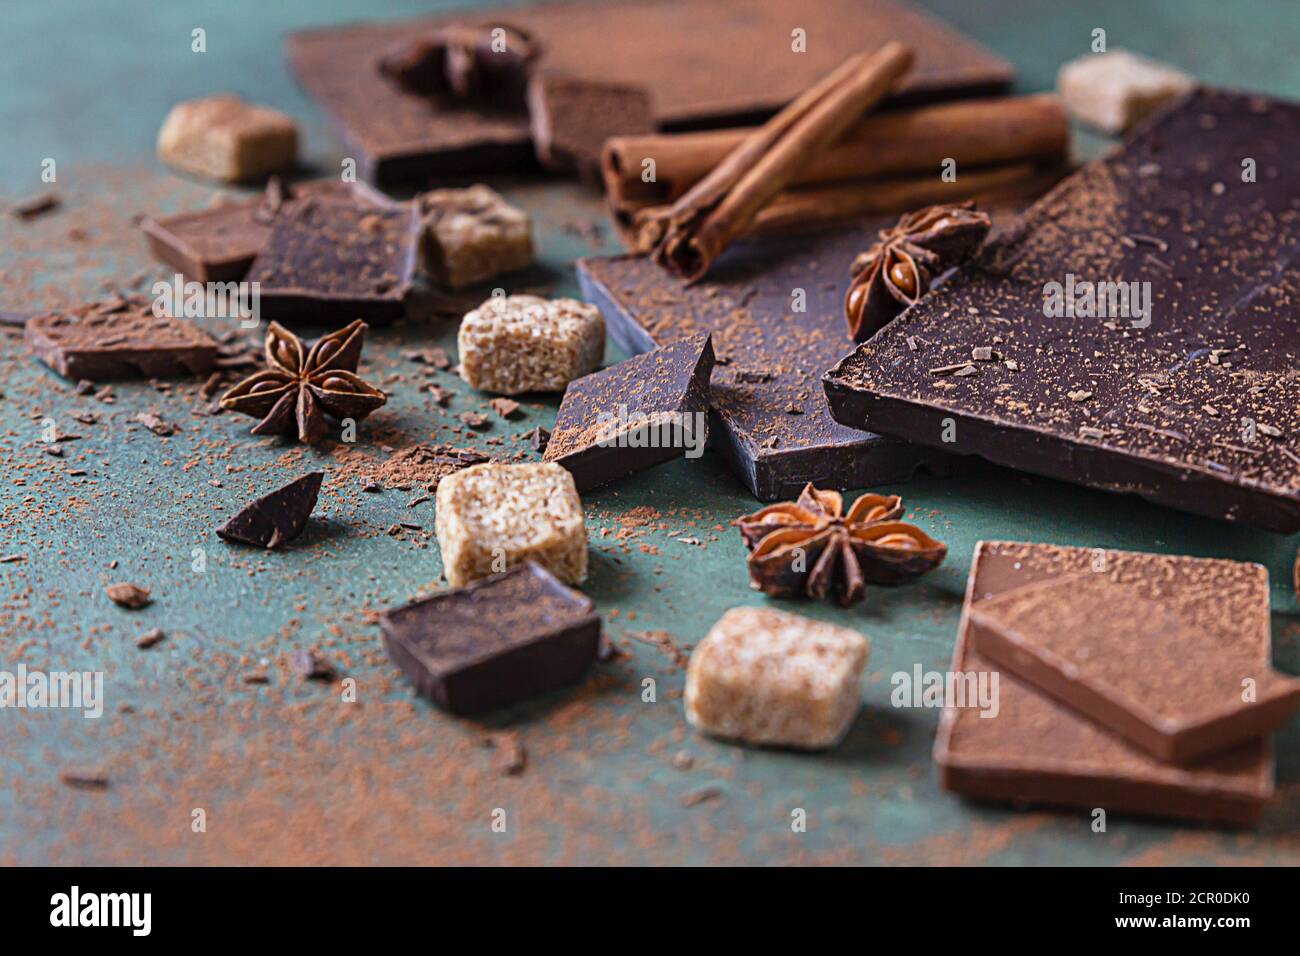 Schokoriegel mit dunkler und milchfarbener Schokolade, Gewürzen, braunem Zucker, Baiser und Marshmallow. Sweet Food Foto Konzept. Stockfoto